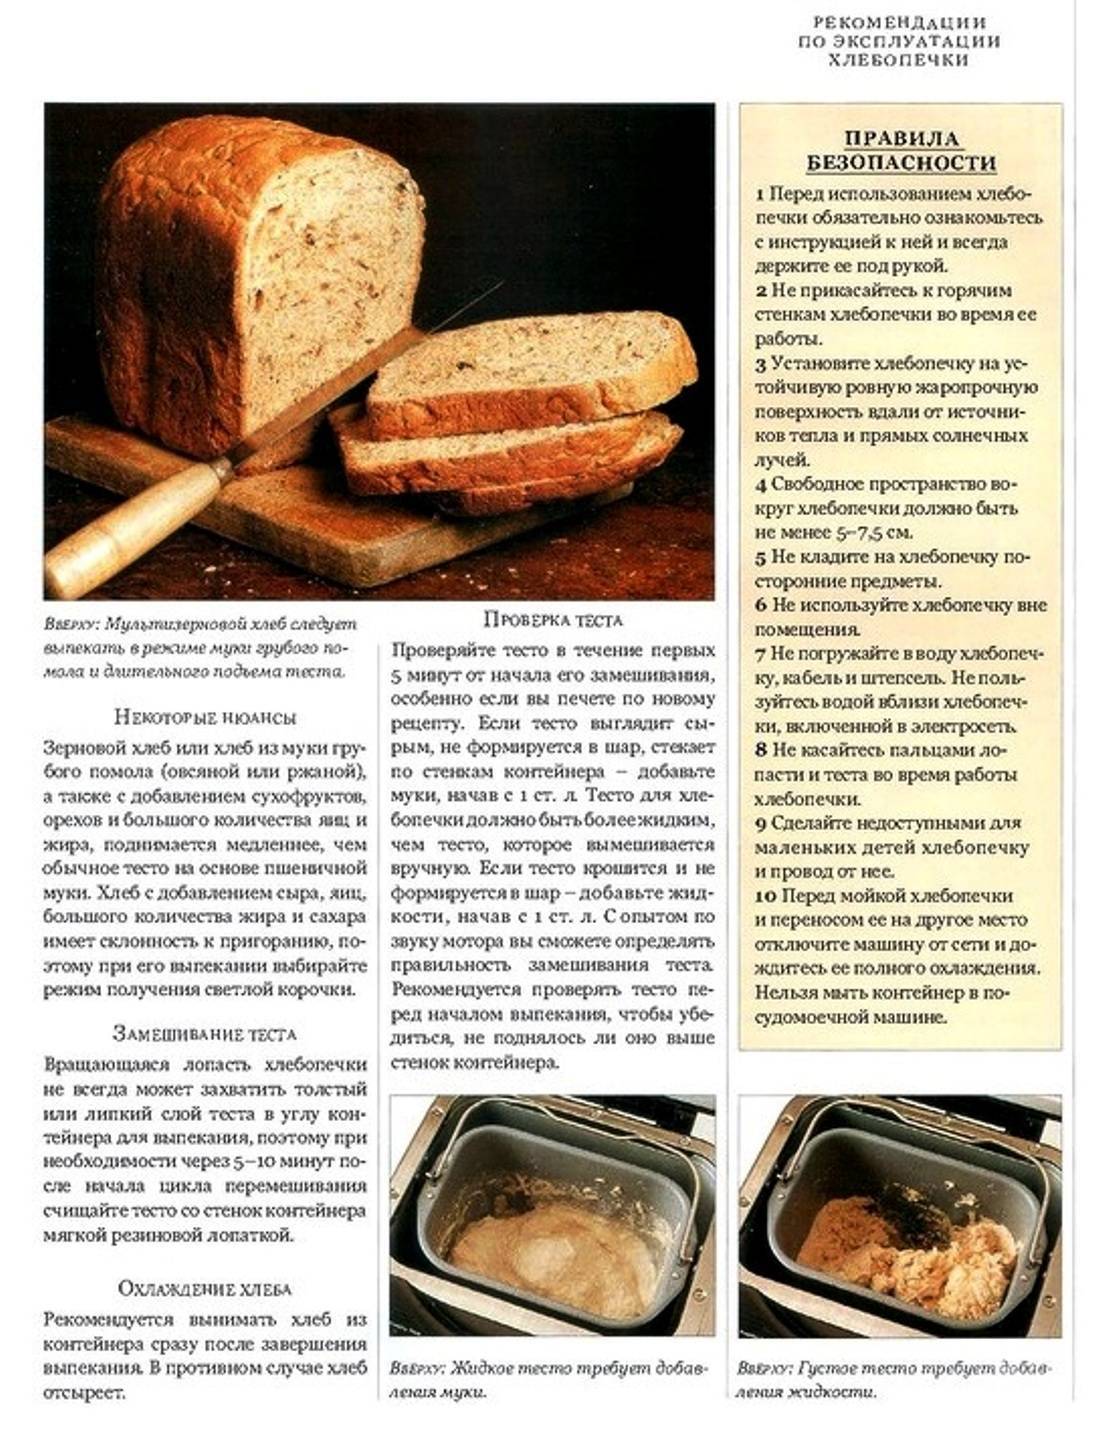 Как пользоваться домашней хлебопечкой. что такое хлебопечка?